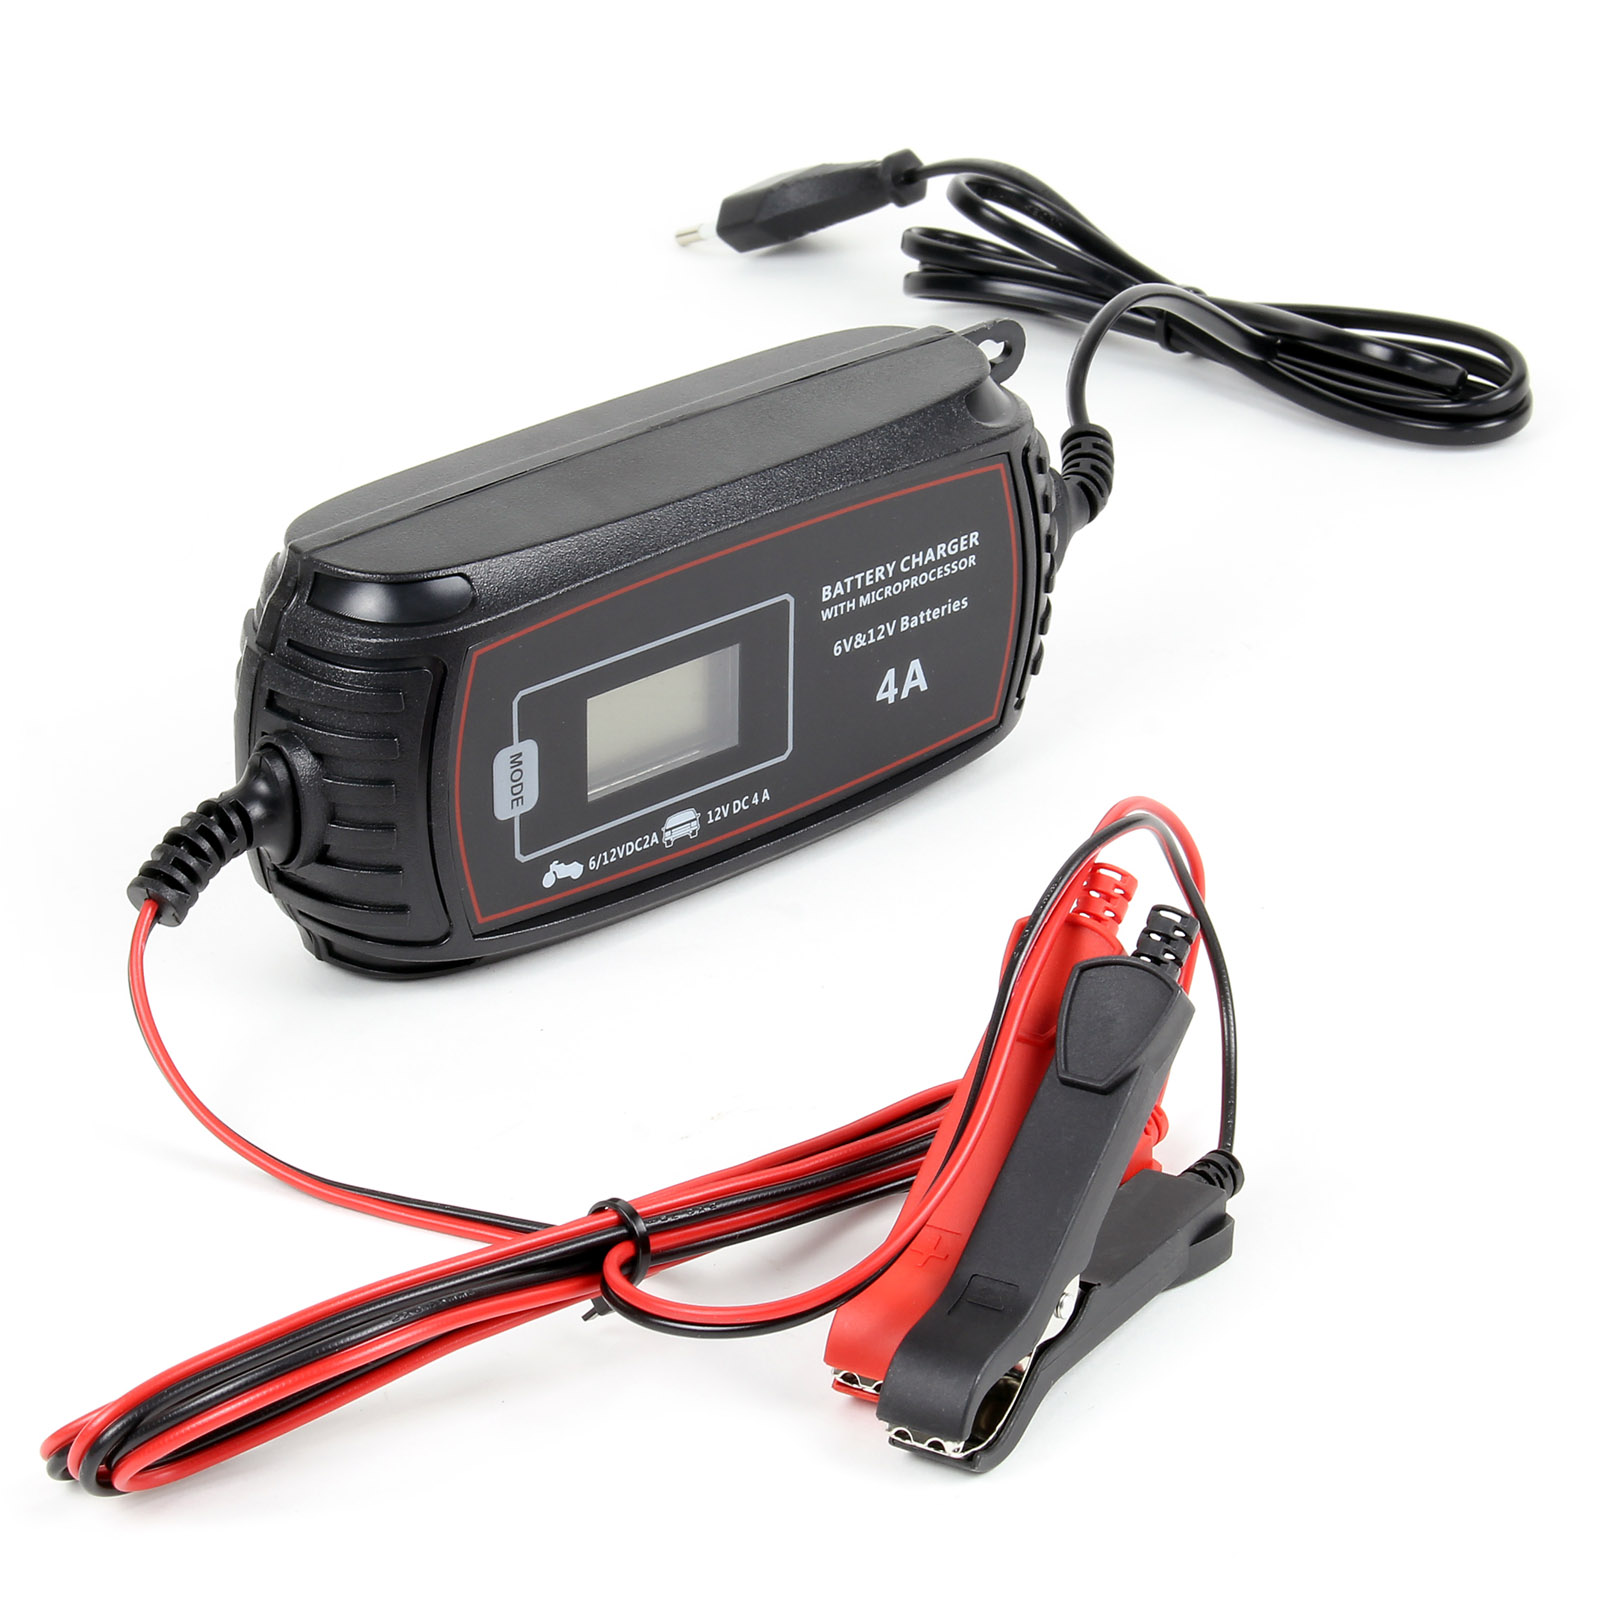 WilTec Chargeur 16A de Batterie Moto Voiture Auto rapide - GZL30